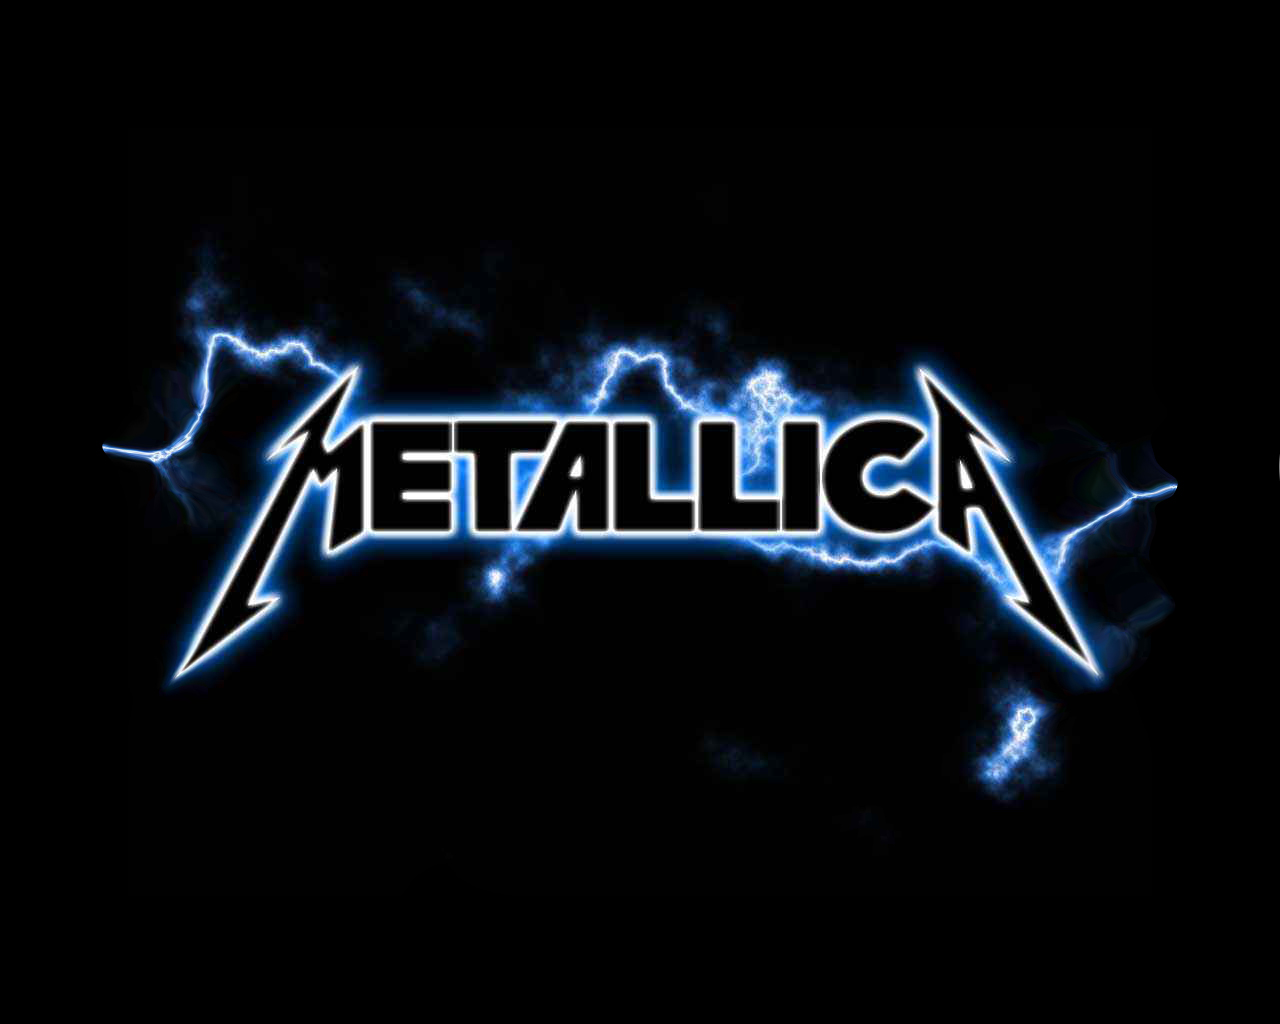 Metallica Wallpaper High Resolution